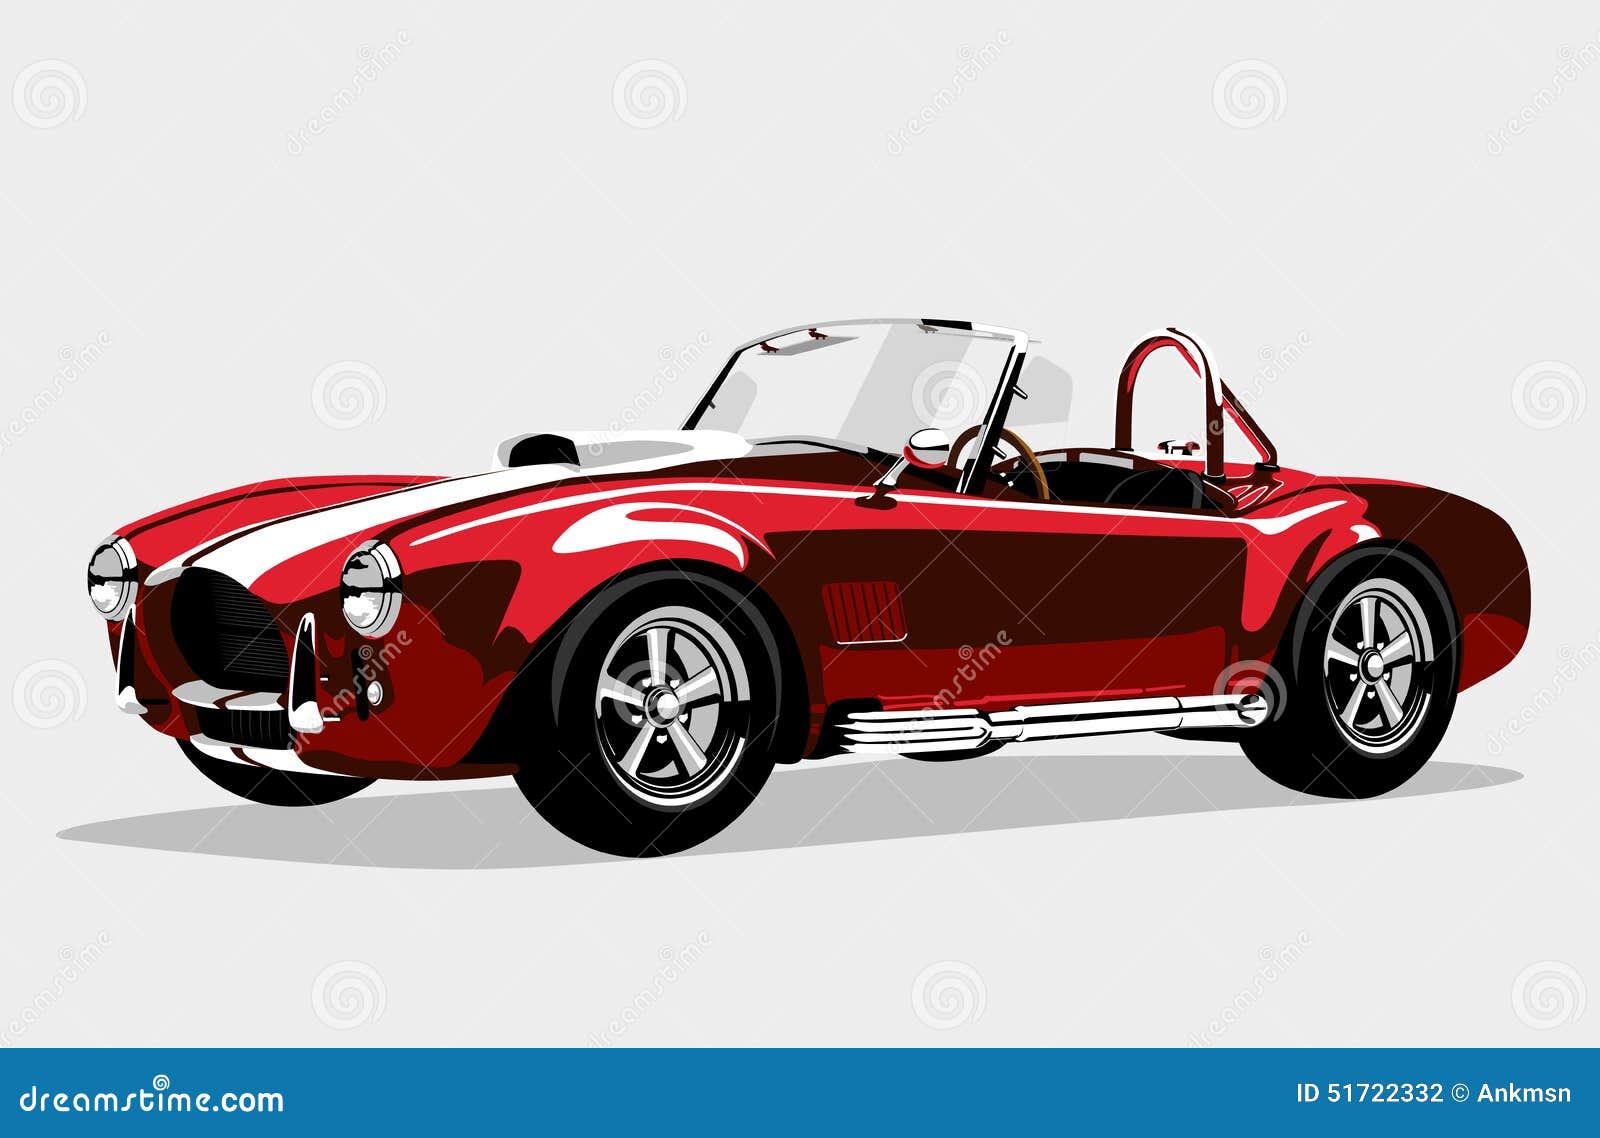 经典体育红色汽车ac谢尔比眼镜蛇跑车向量例证 插画包括有高雅 跑车 减速火箭 红色 汽车